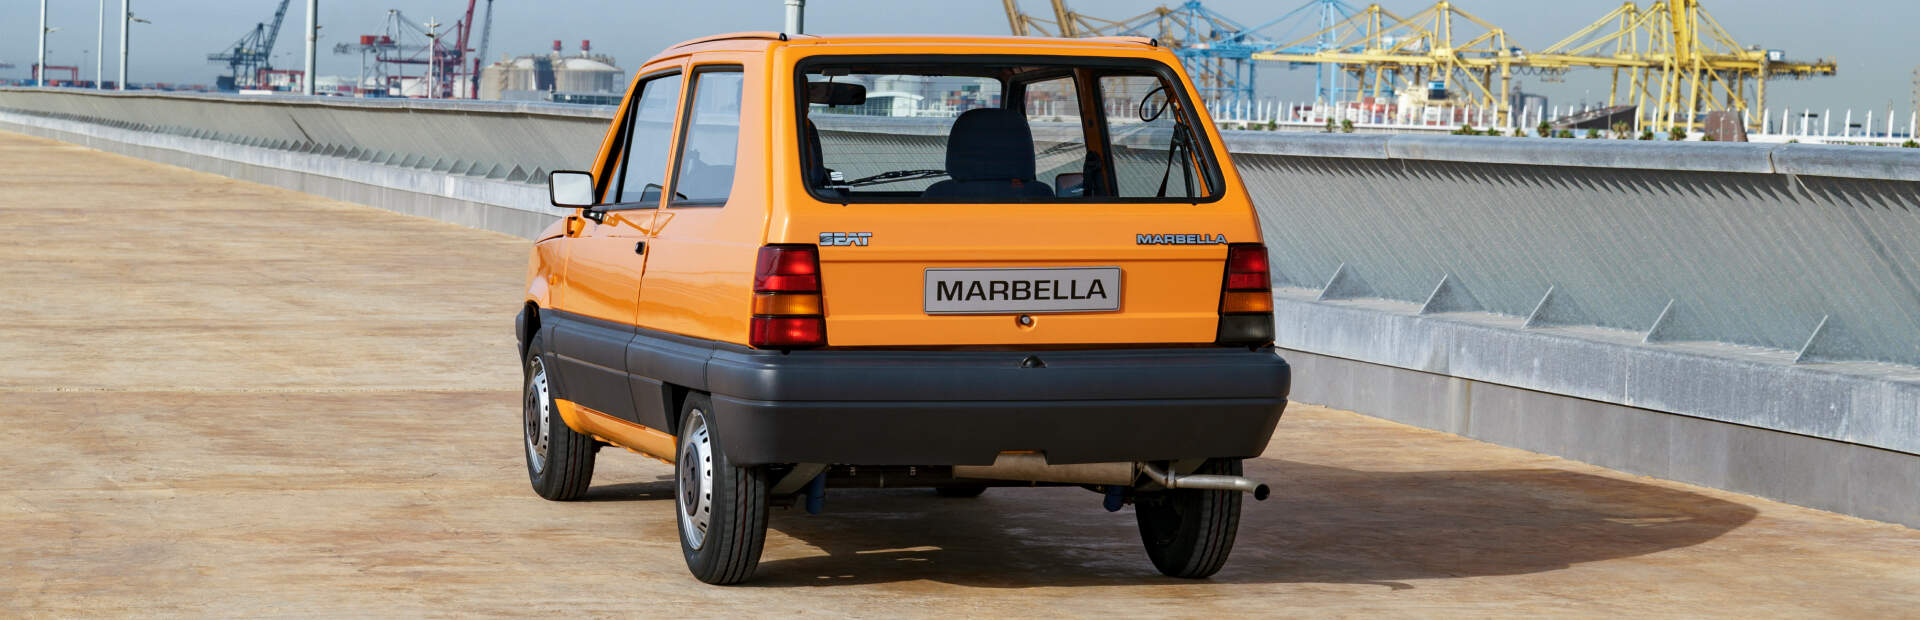 SEAT Marbella - hiszpański symbol niezależności